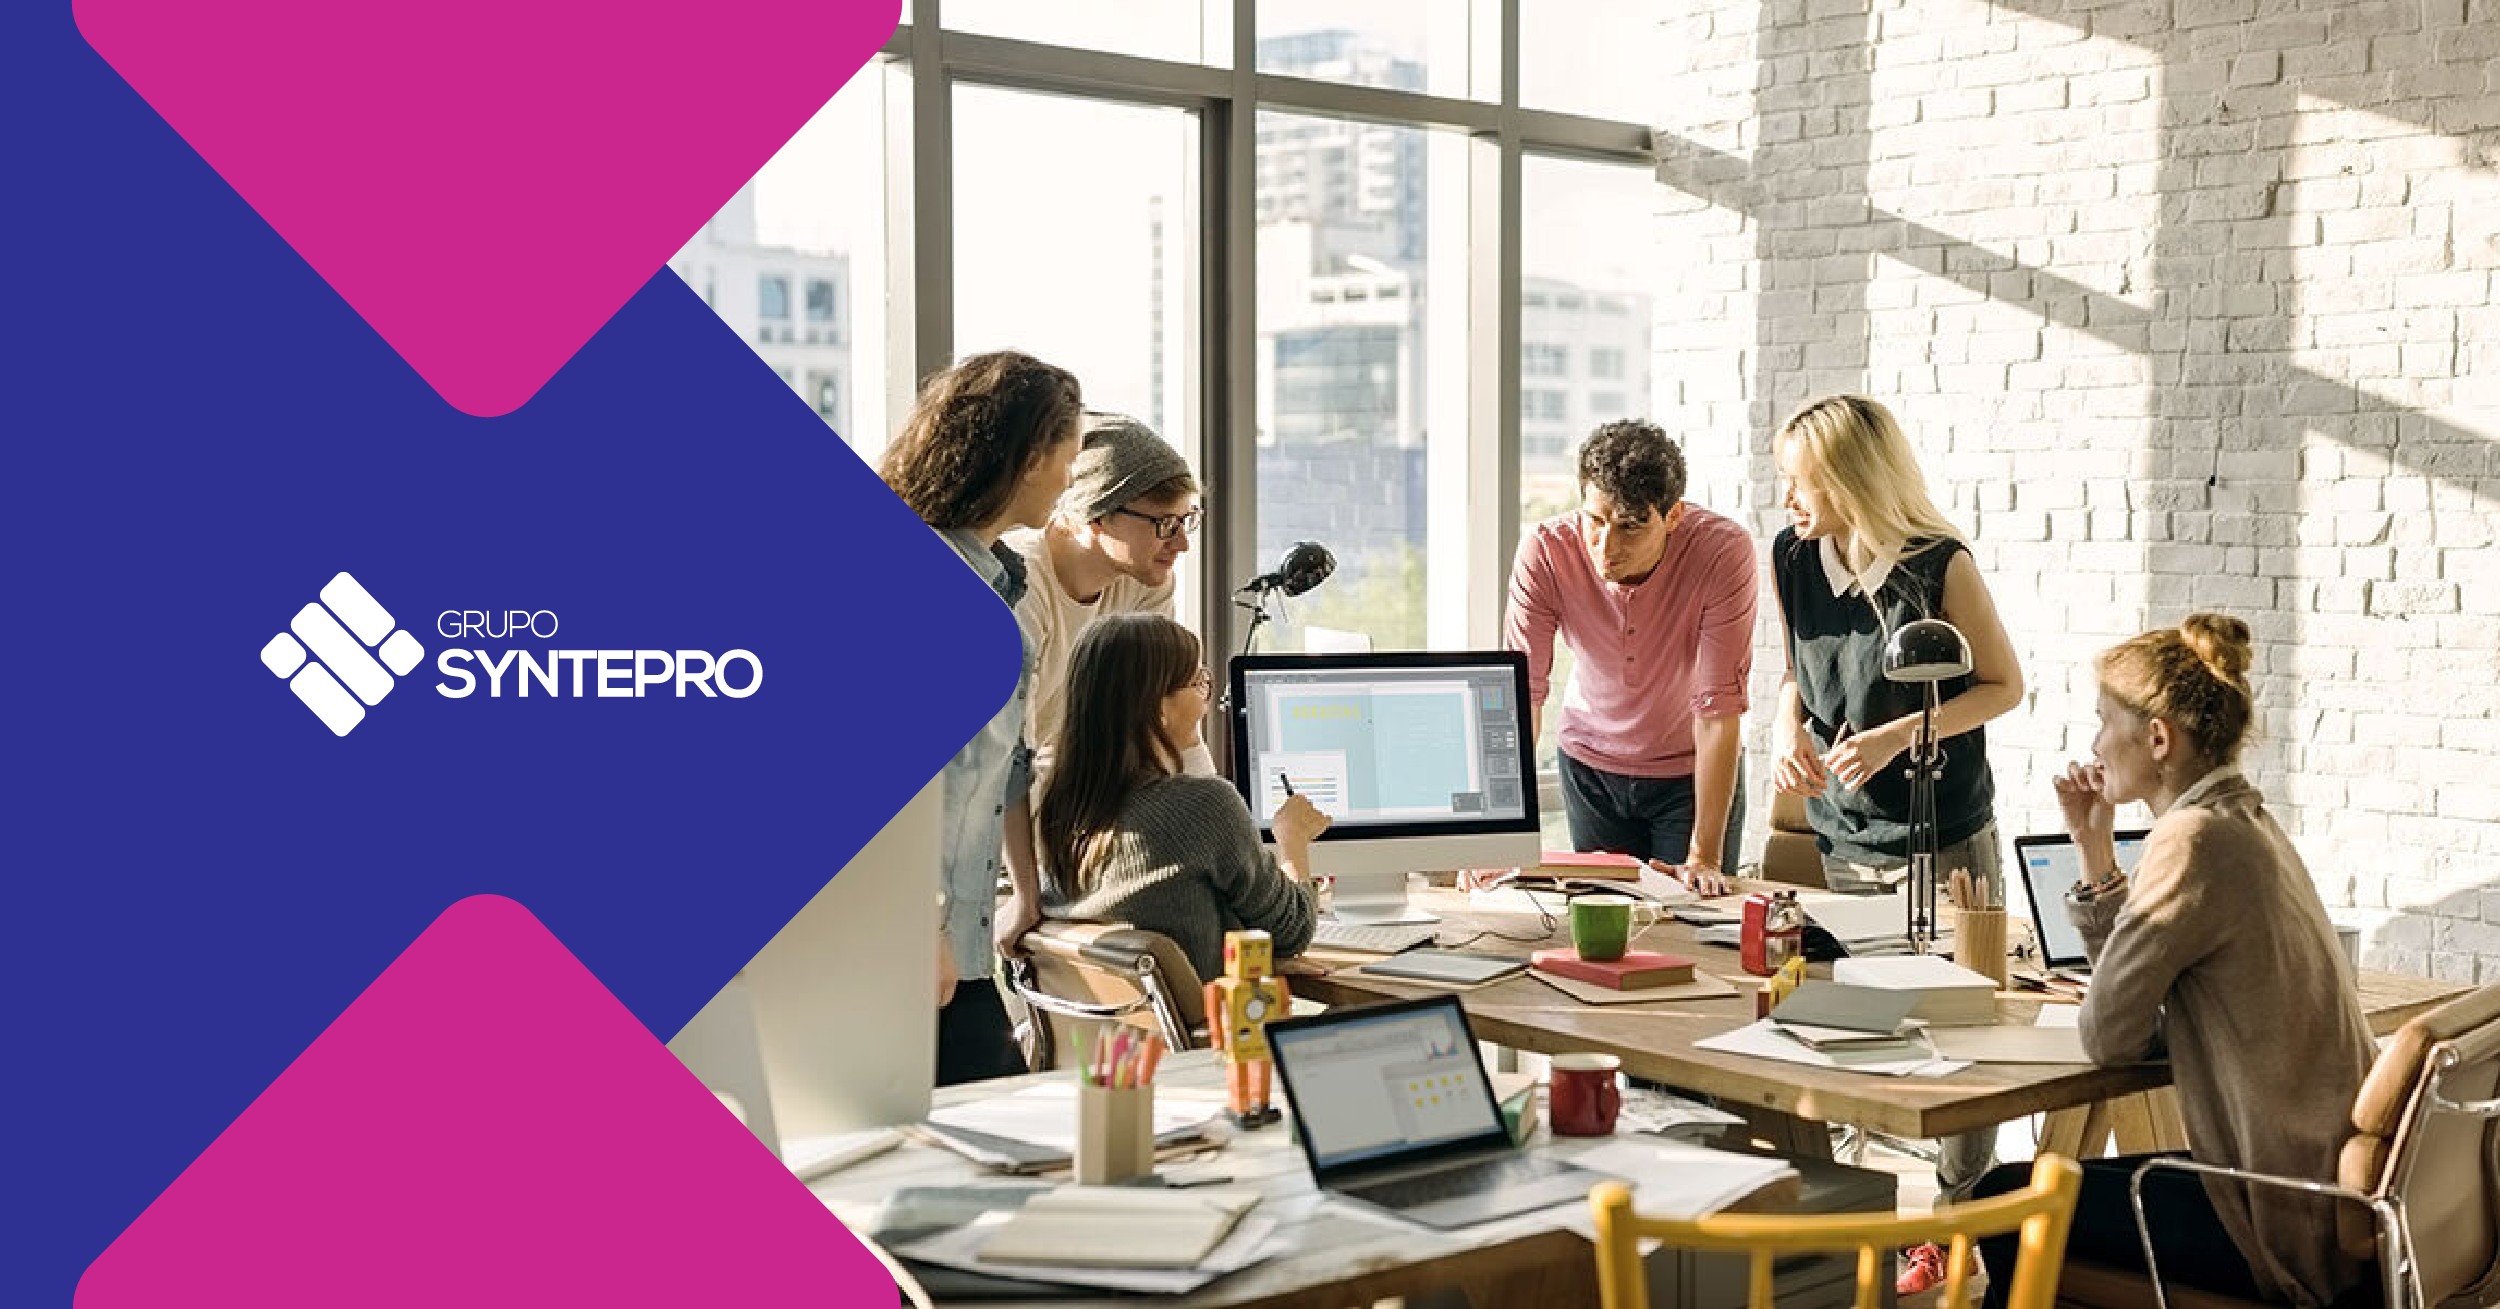 Download Videosex From Filebox - El reto de contratar y fidelizar millennials - Grupo Syntepro